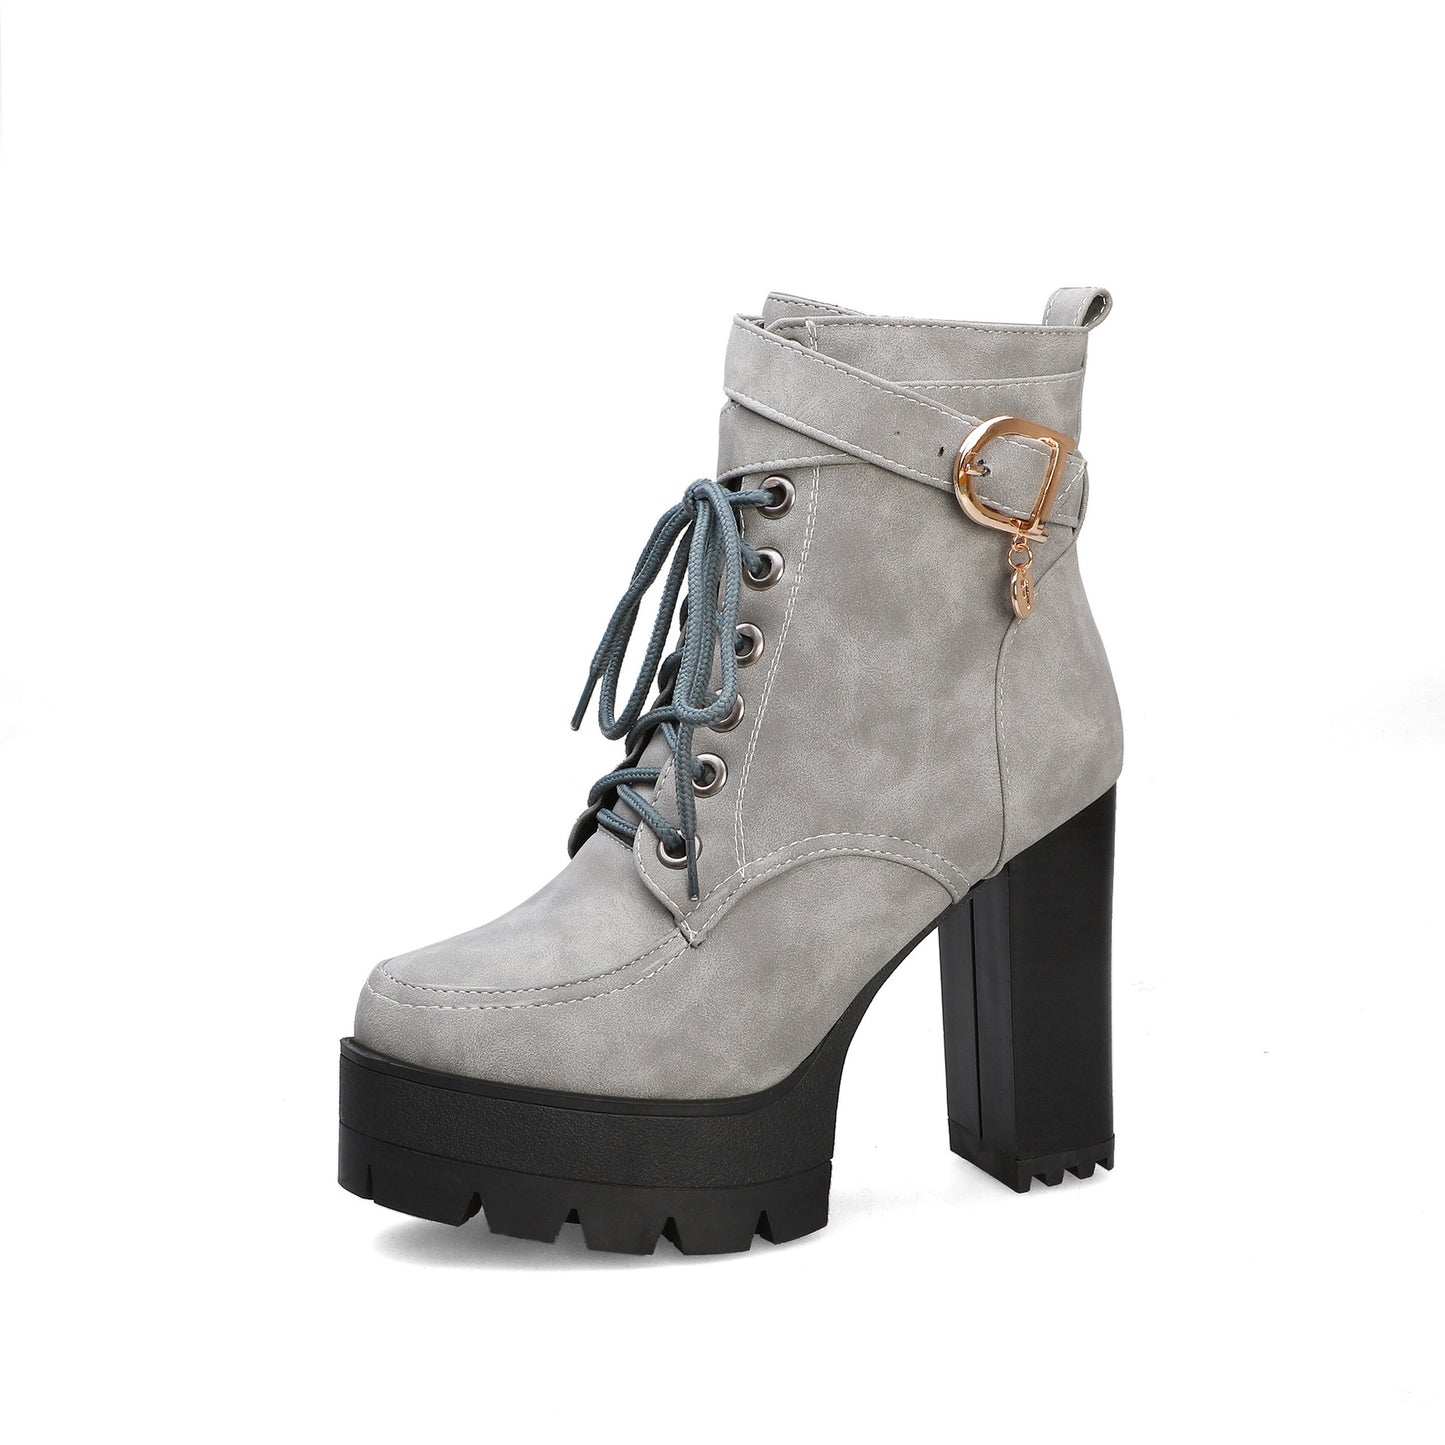 Women's platform heeled Short Boots